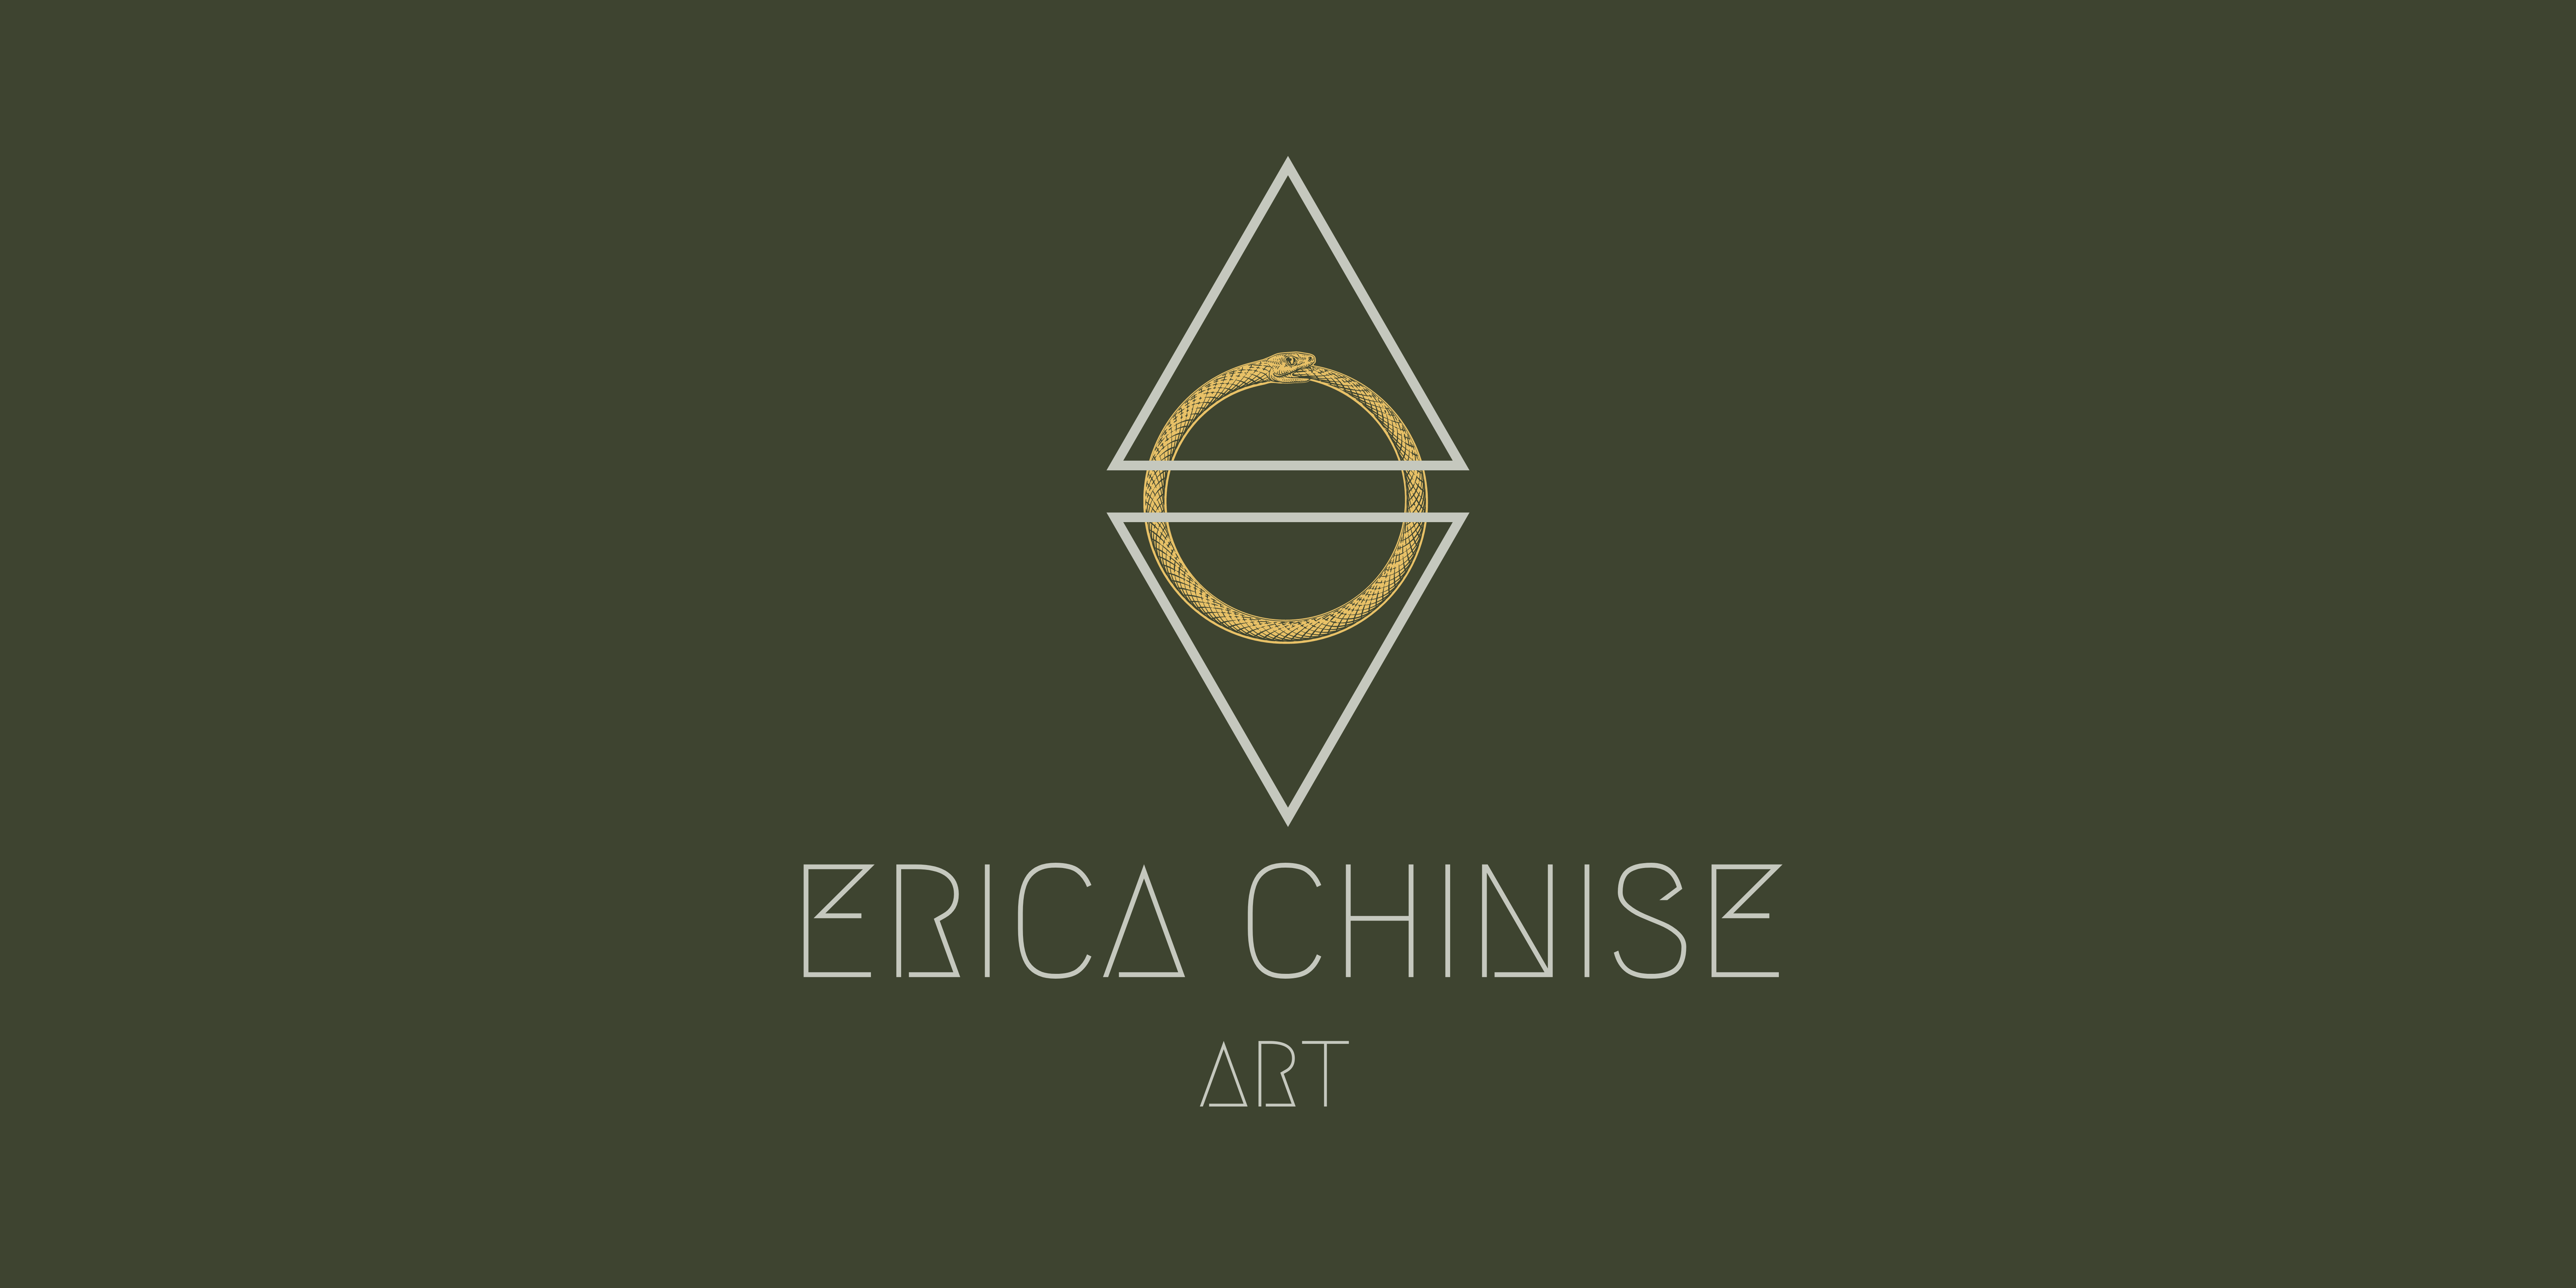 Erica Chinise Art